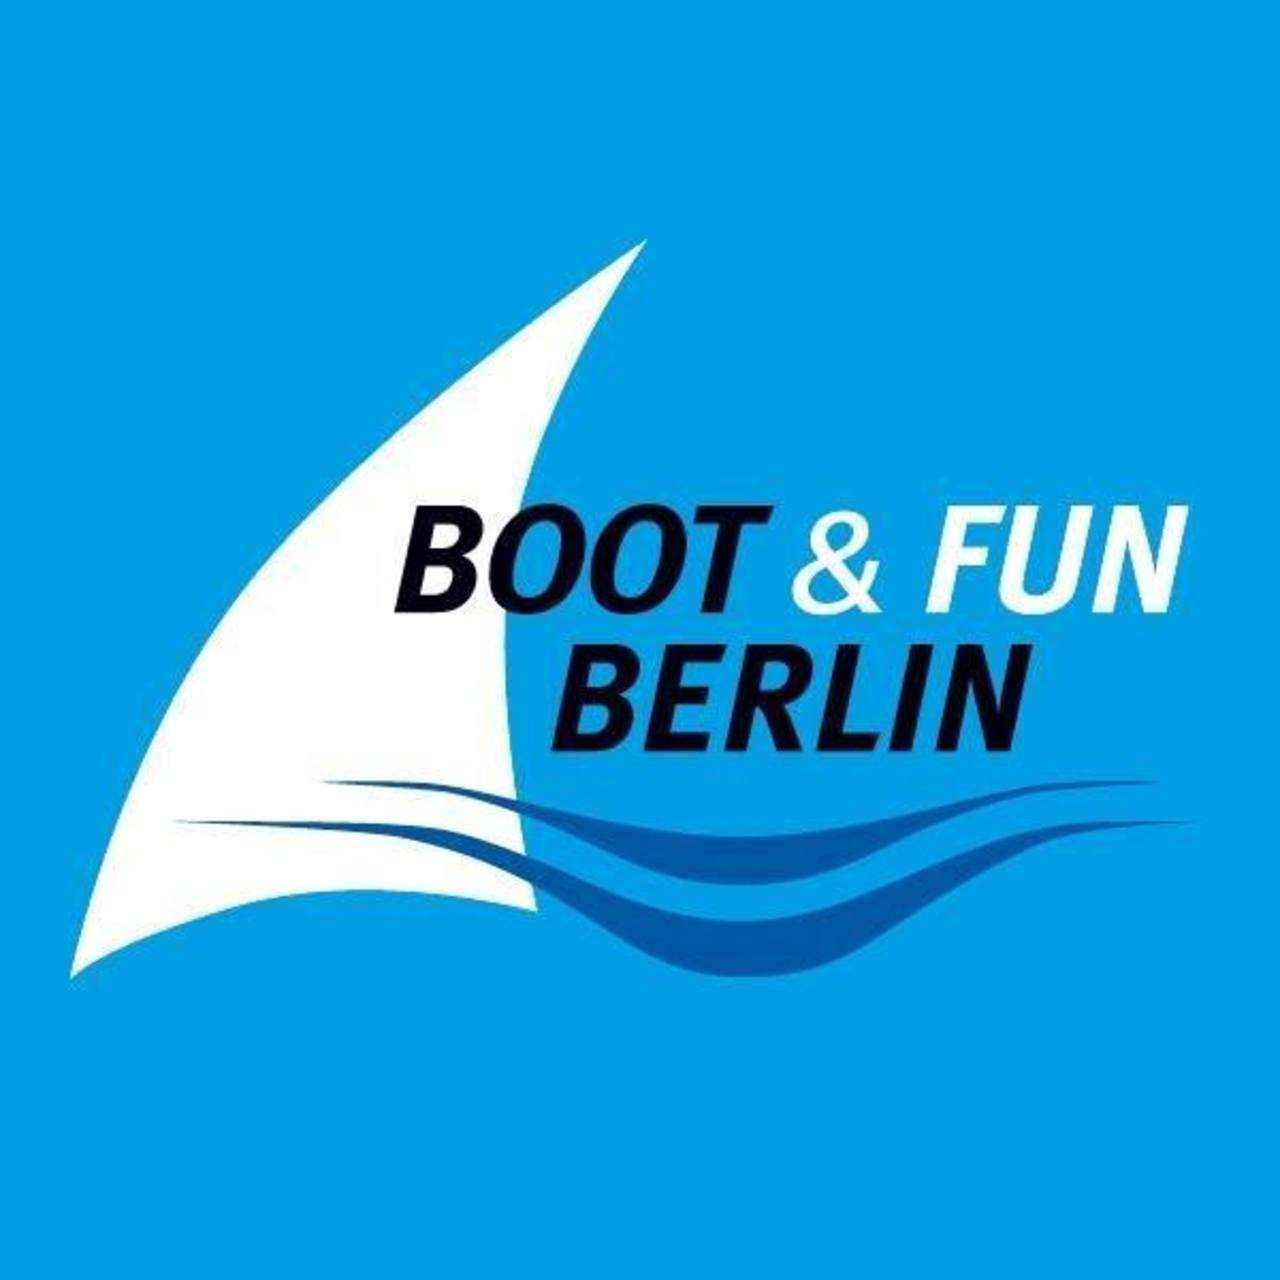 BOAT & FUN BERLIN - GERMANY